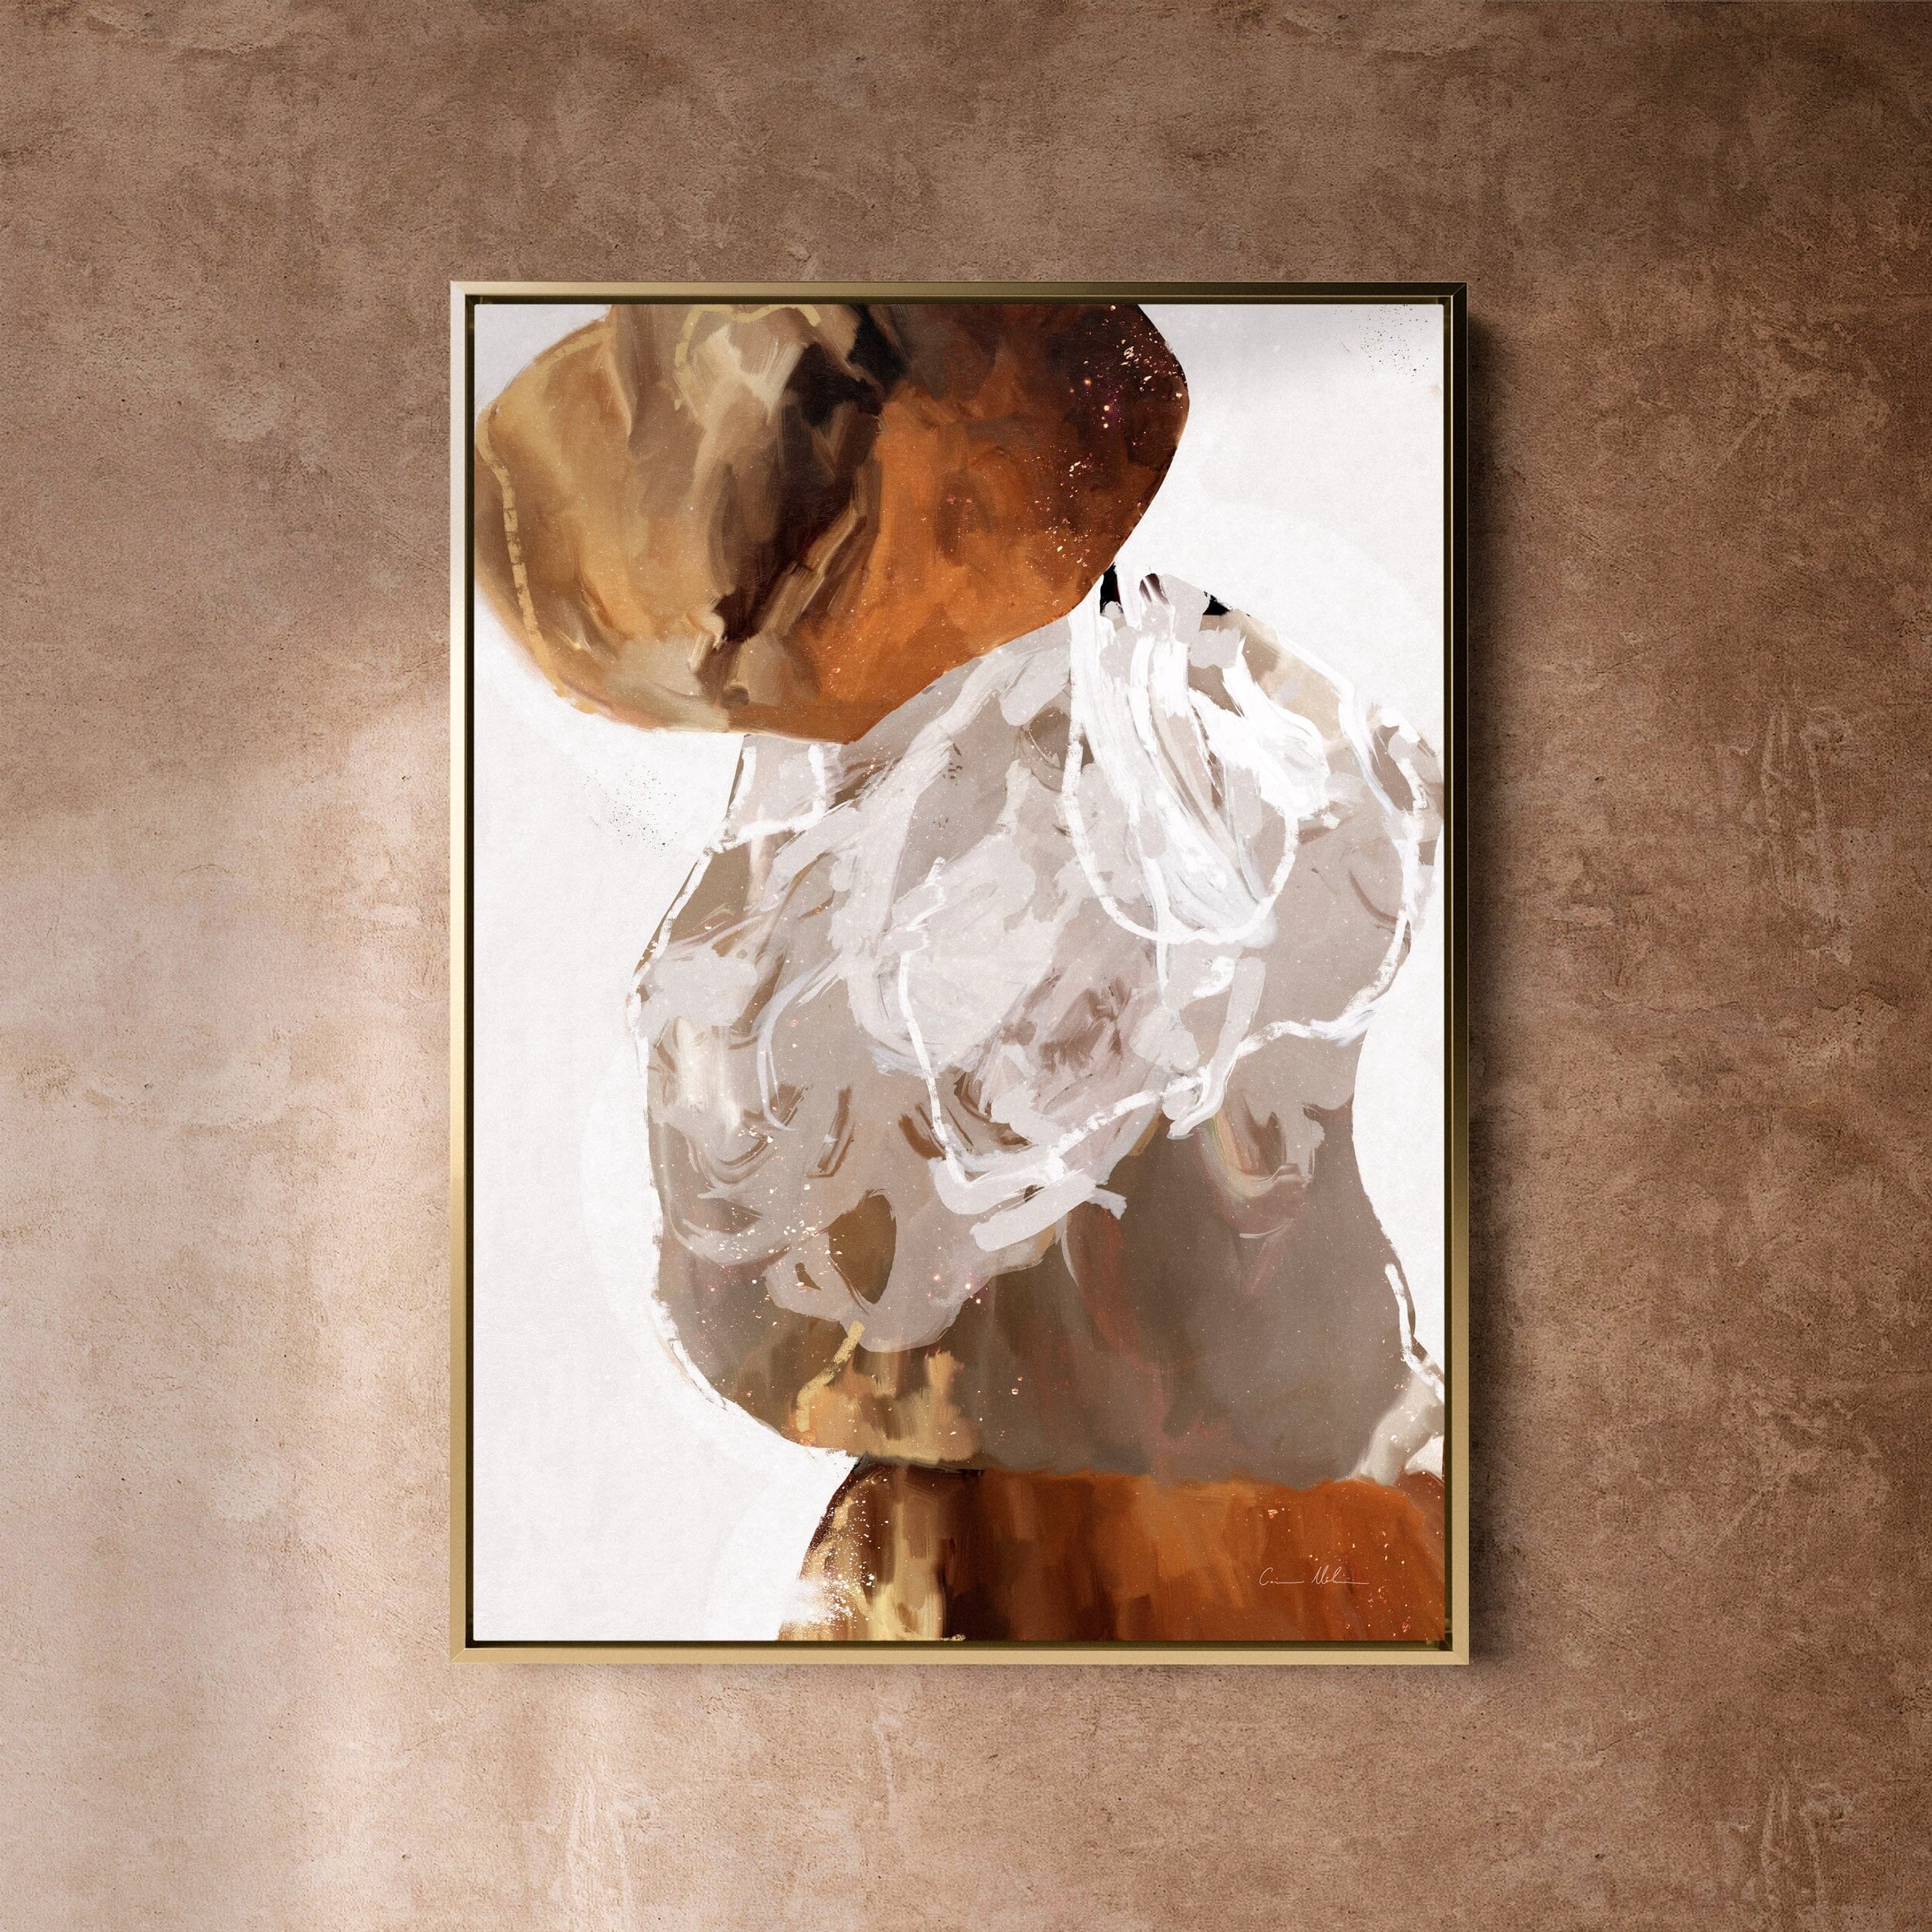 "Kununurra" on Canvas - Portrait I Canvas Wall Art Corinne Melanie Art Professionally Framed - Gold 24x32in / 60x80cm 